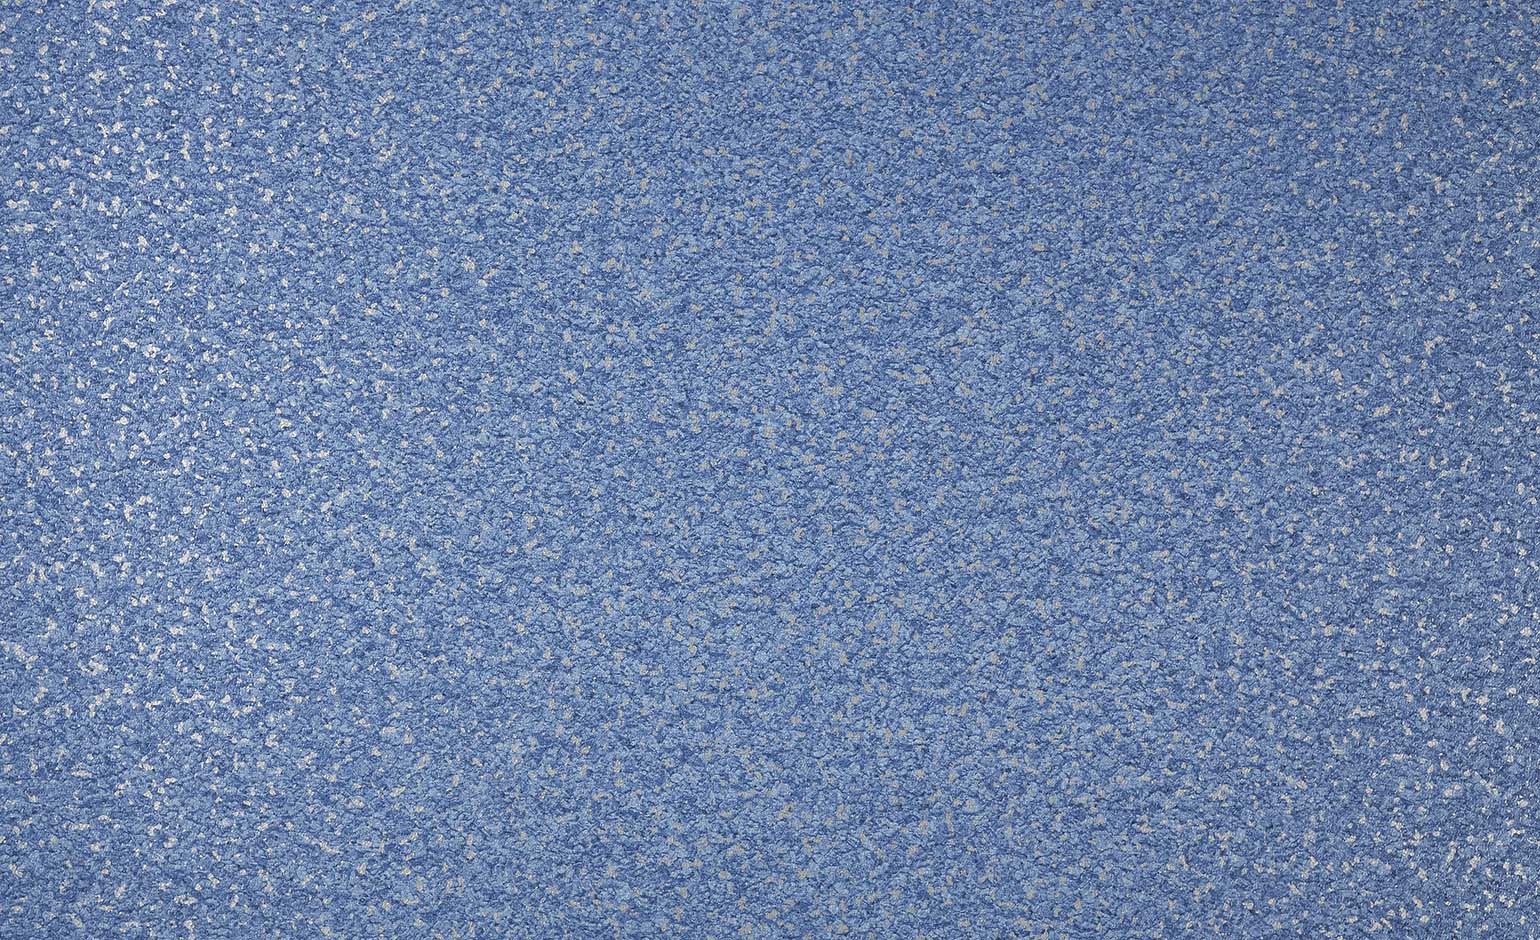 Sol vinyle rouleau PROJECT Tarkett, Uni/faux uni moucheté pailleté bleu, rouleau 4.00 m